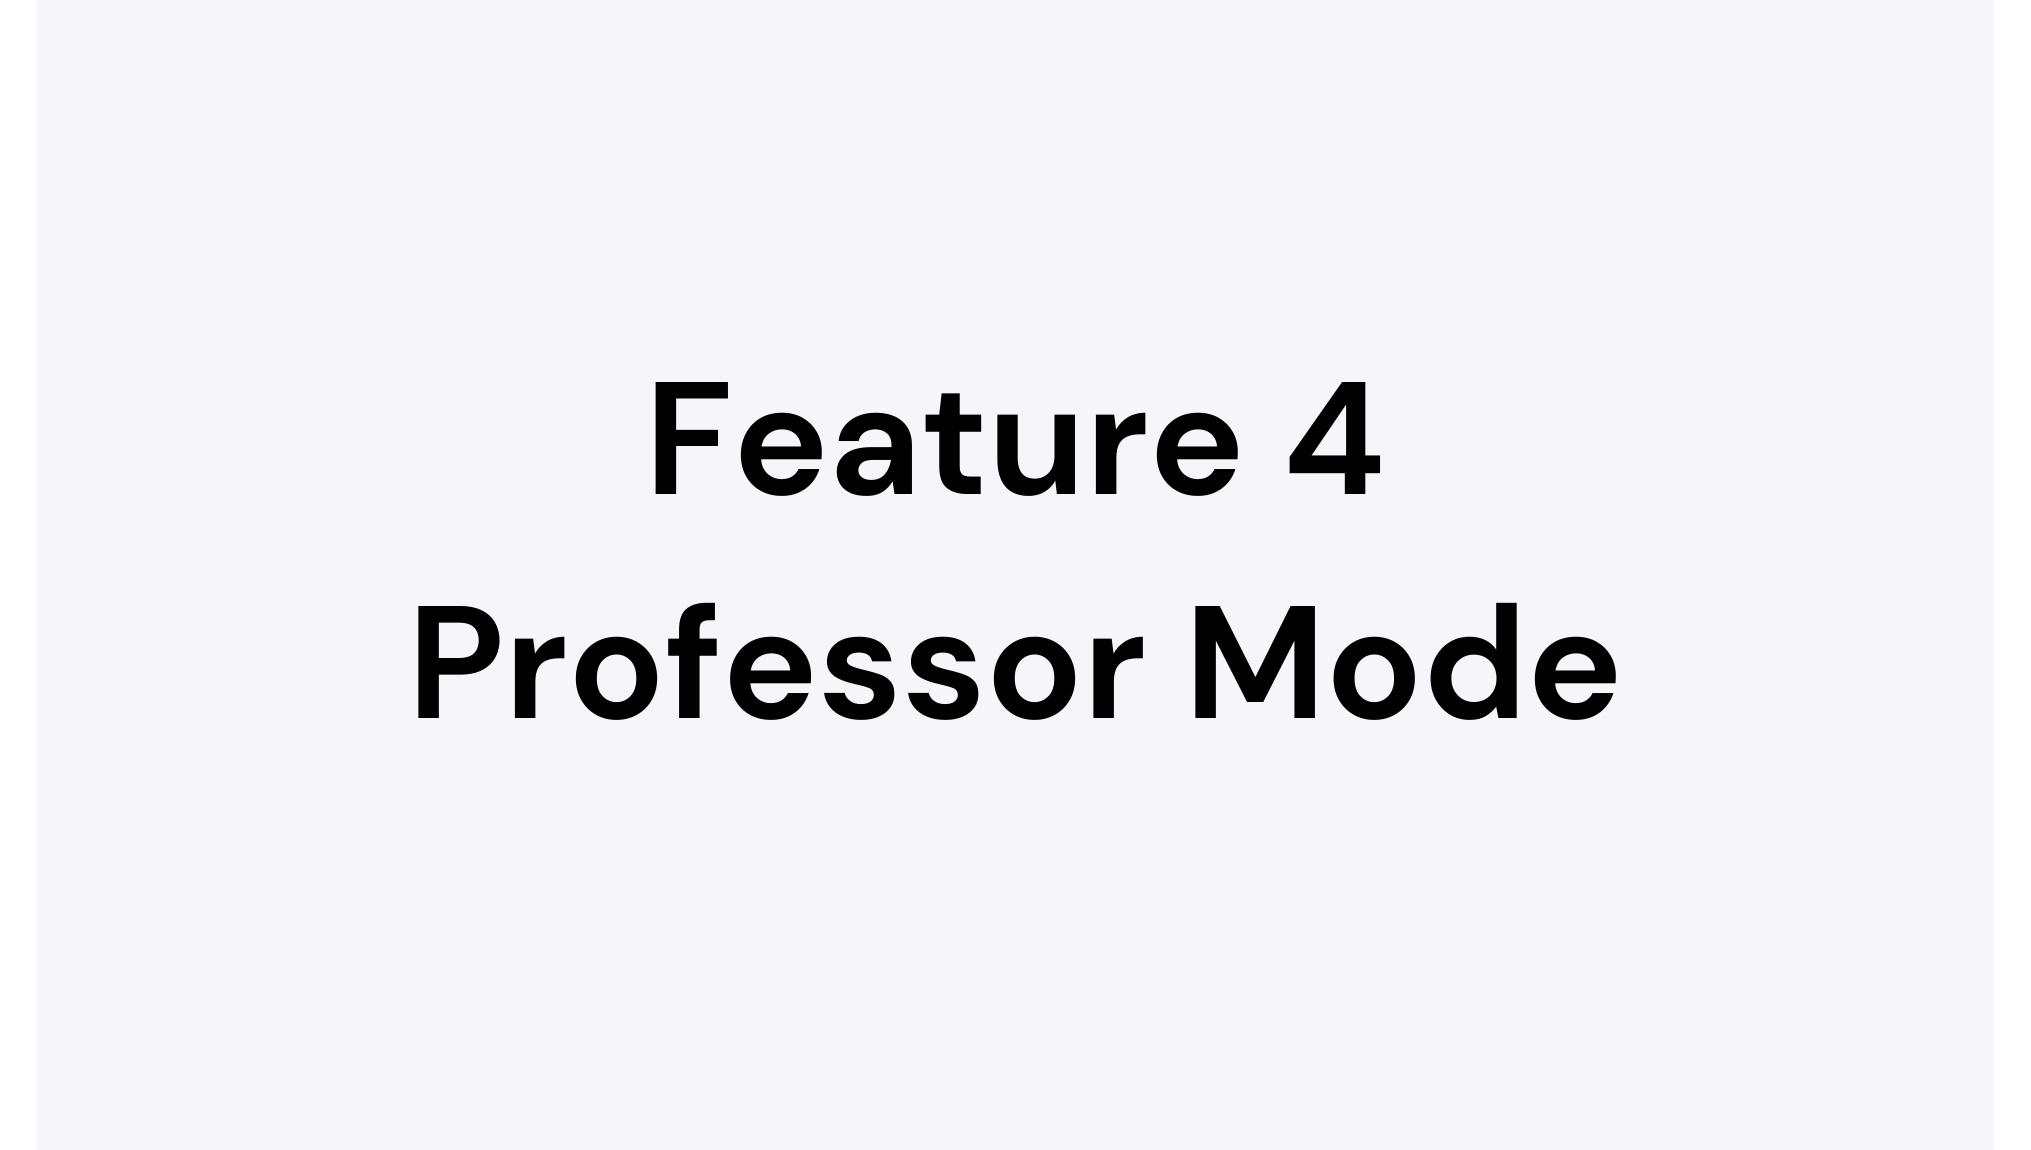 Professor Mode